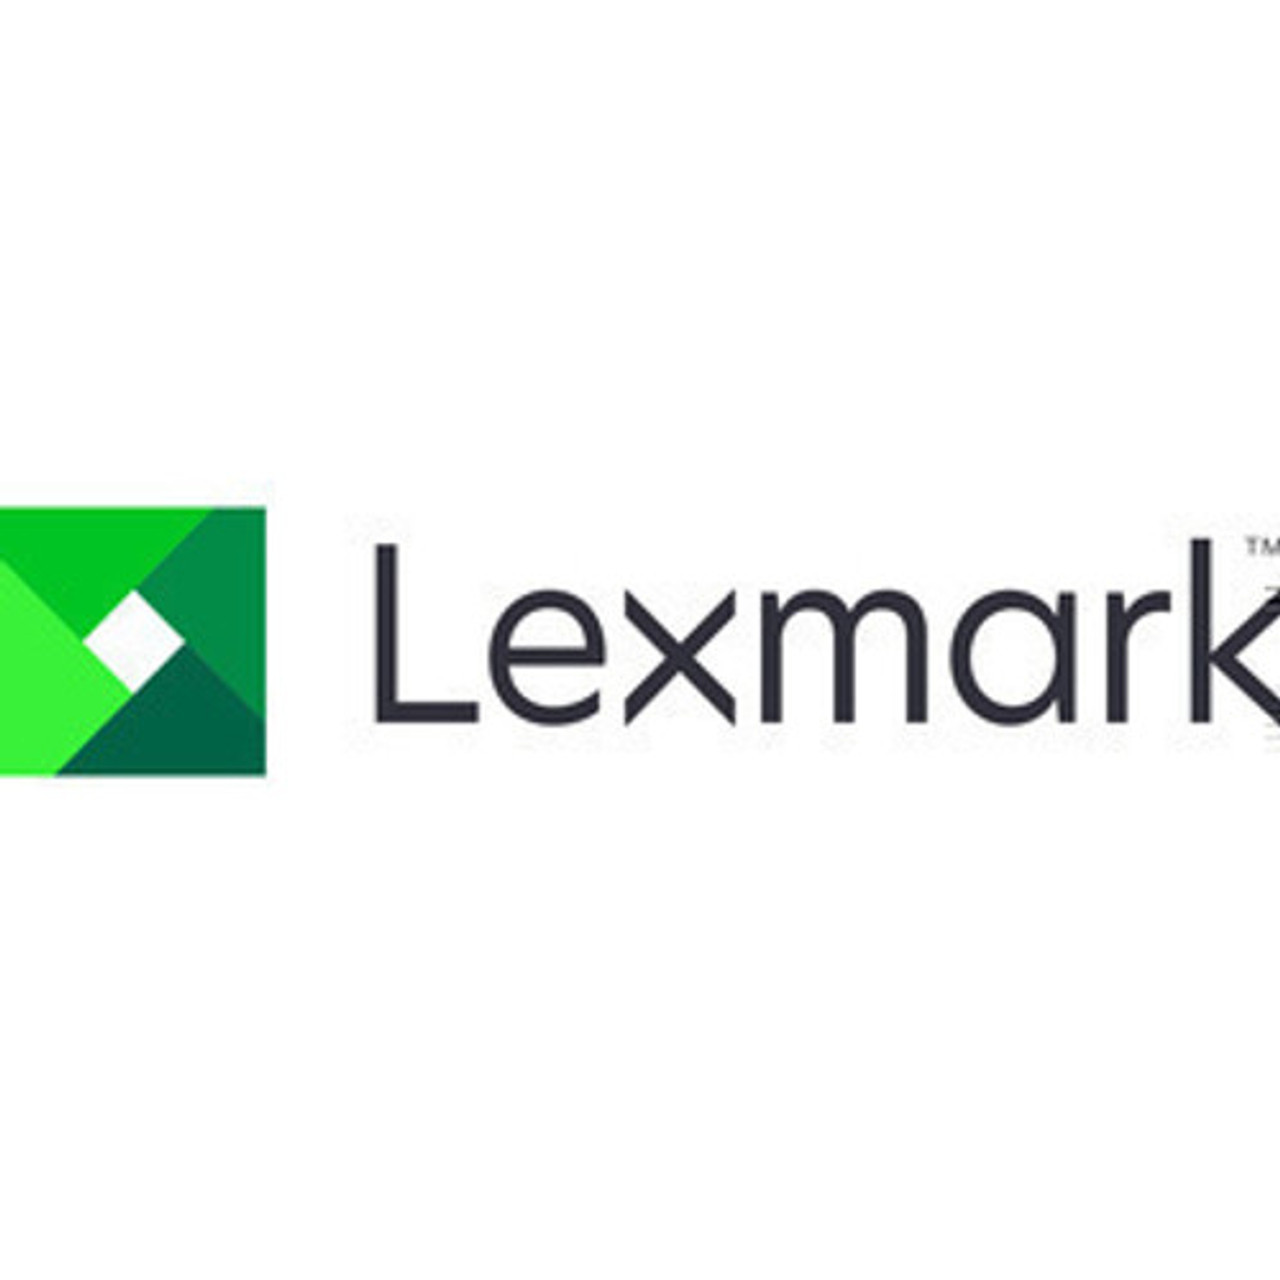 Lexmark Upgrade Onsite Repair - 2361133